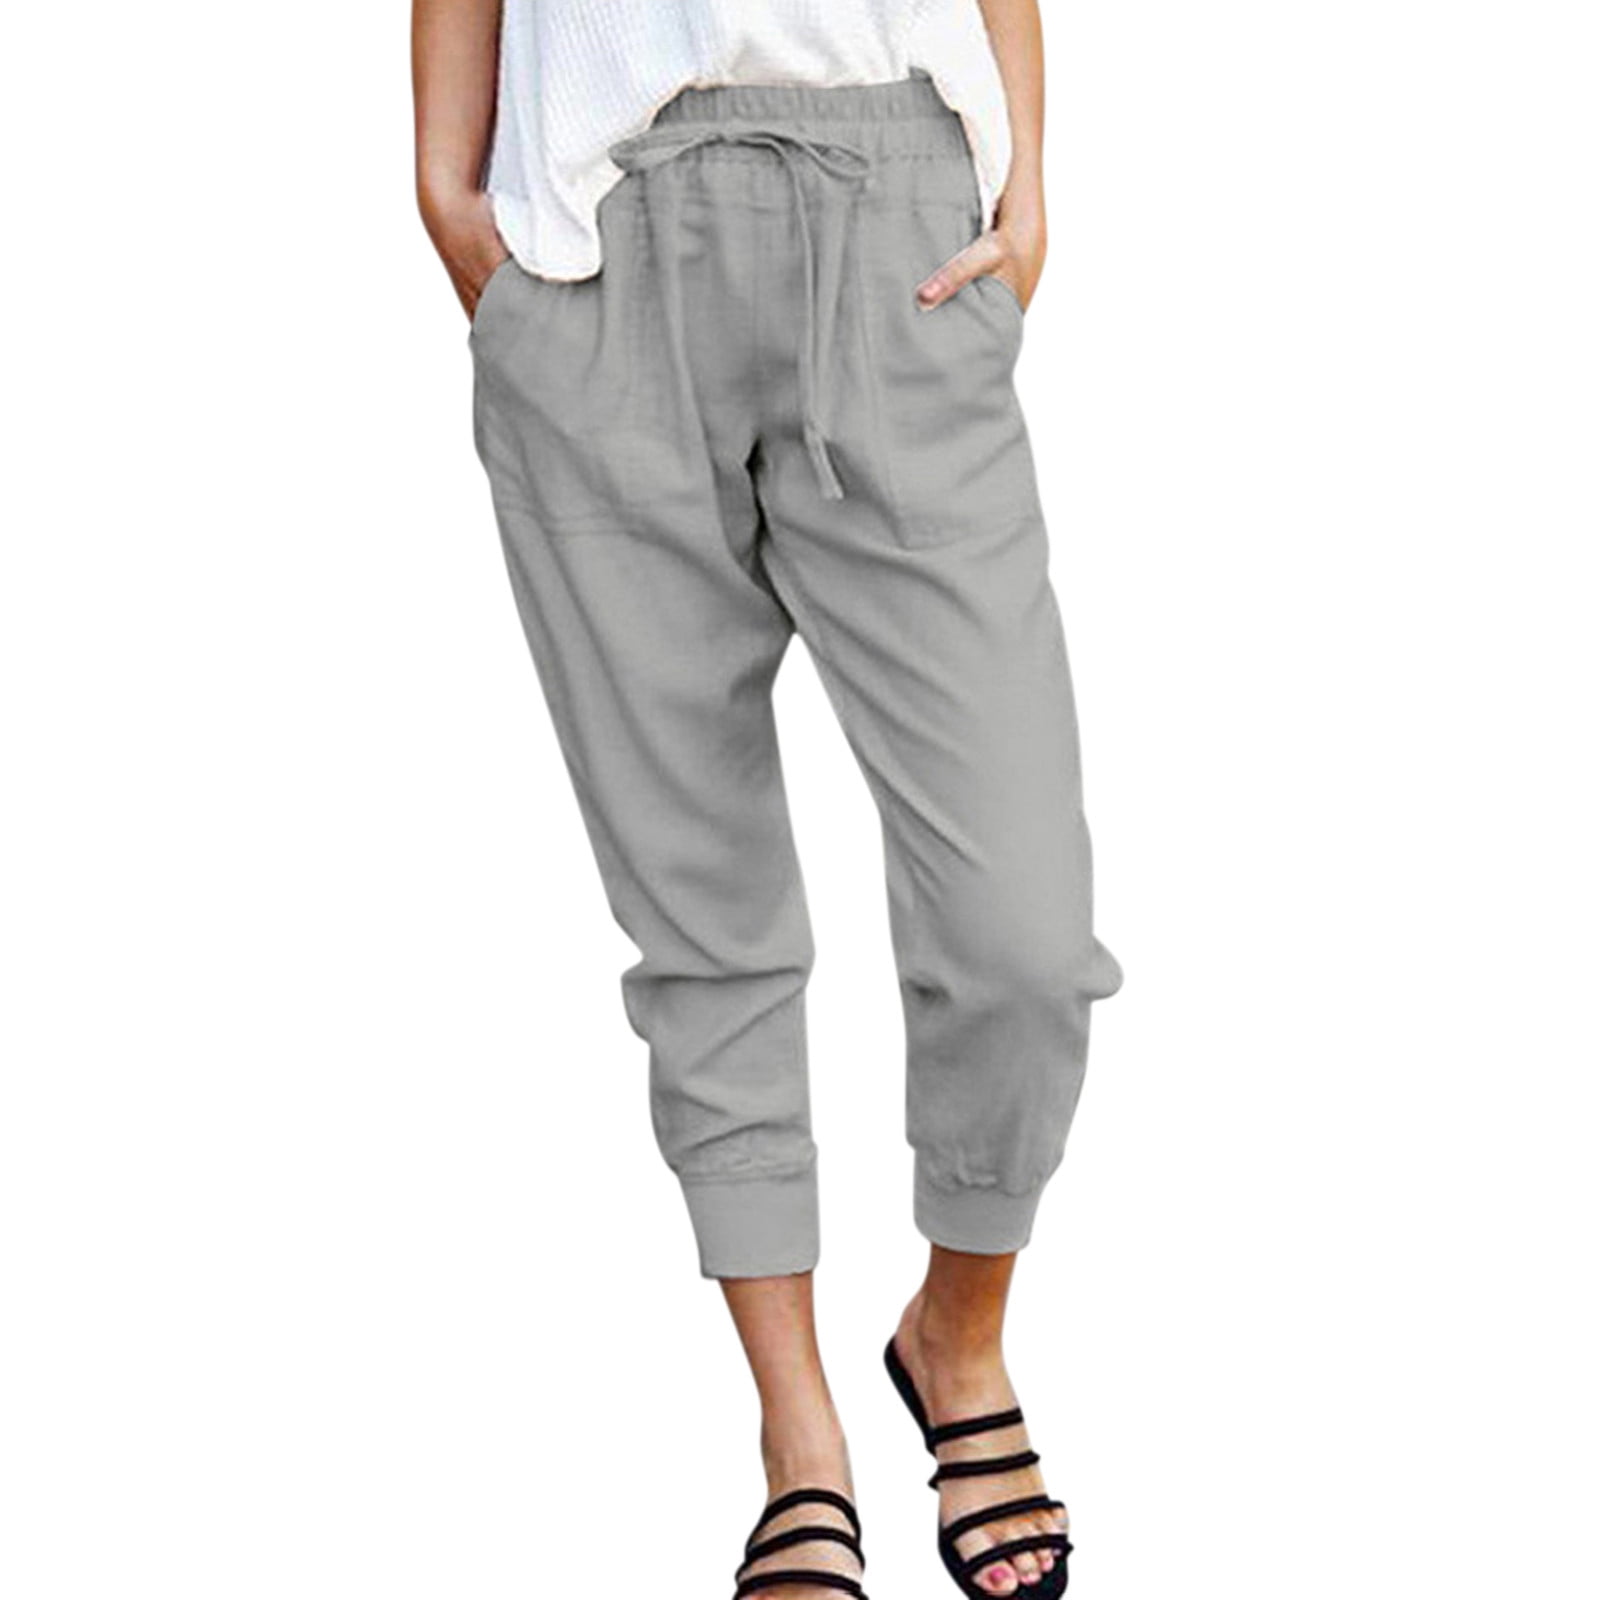 Larisalt Cargo Pants Women,Women's Casual Cotton Linen Pant Unique Pockets  Gray,XL - Walmart.com